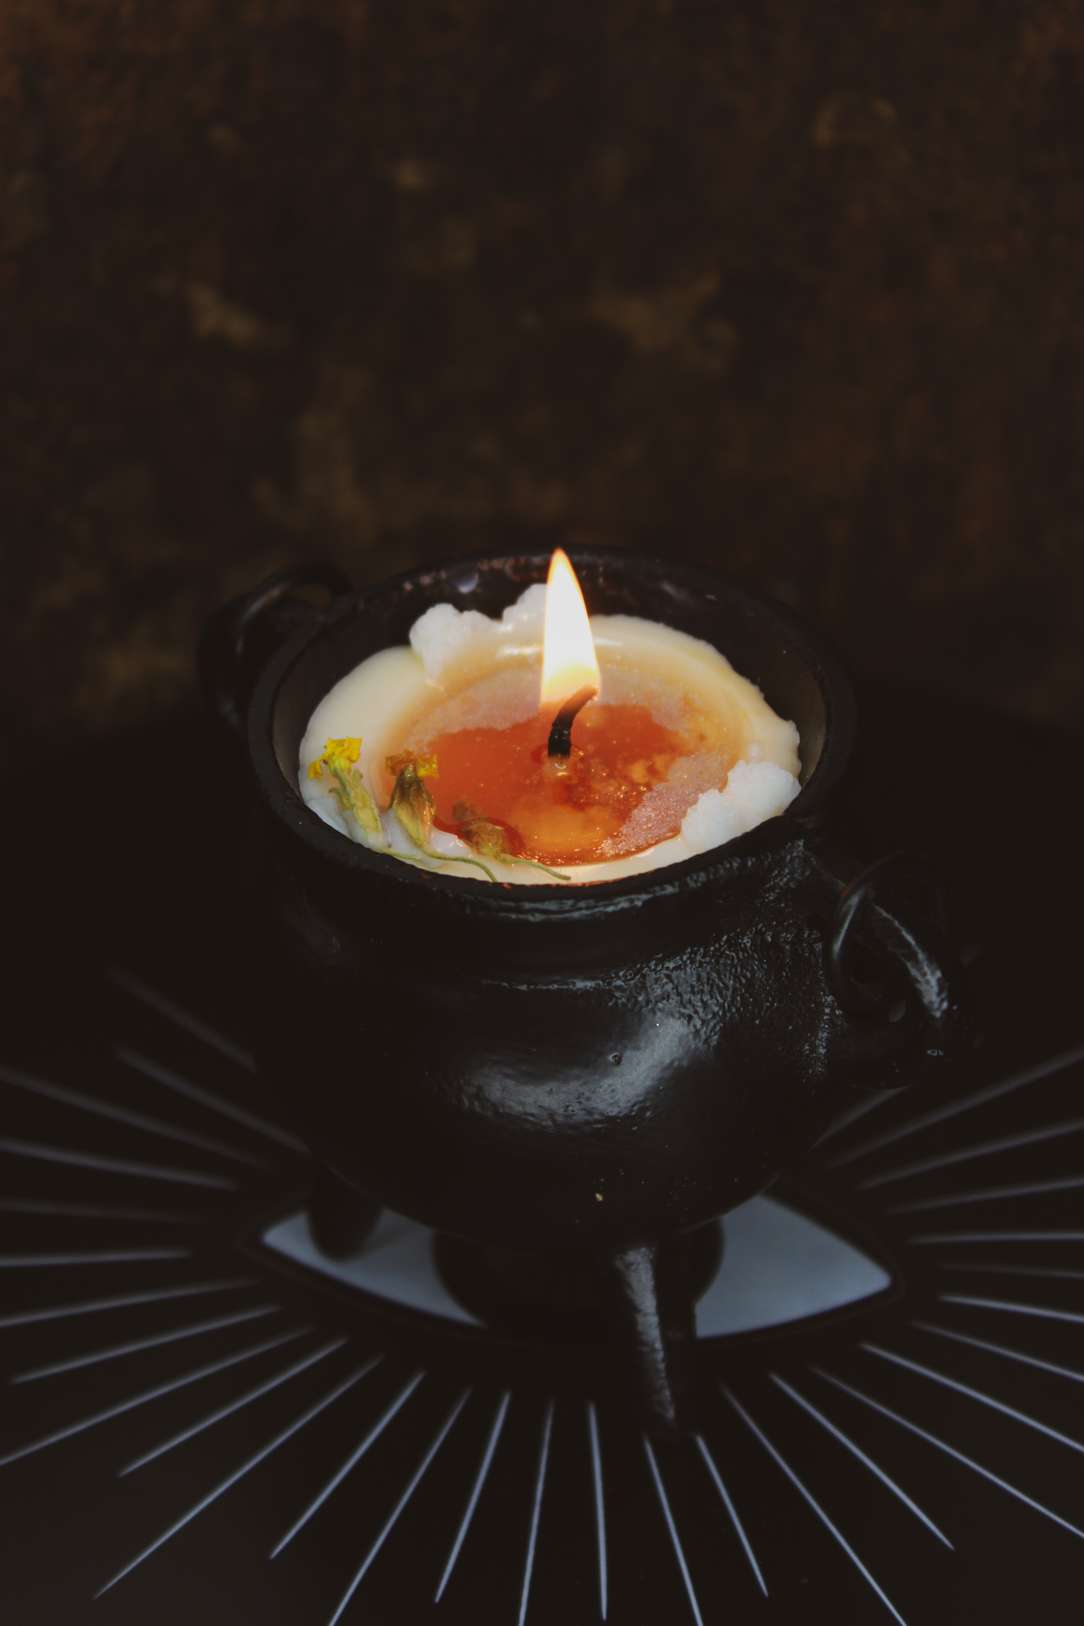 Eine weiße Kerze in einem gußeisernen Hexenkessel. Es sind weiße Schneeflocken aus Wachs darauf drapiert und Schlüsselblumen-Blüten liegen darauf. Die Kerze brennt und unter dem weißen Wachs kommt orangenes zum Vorschein.